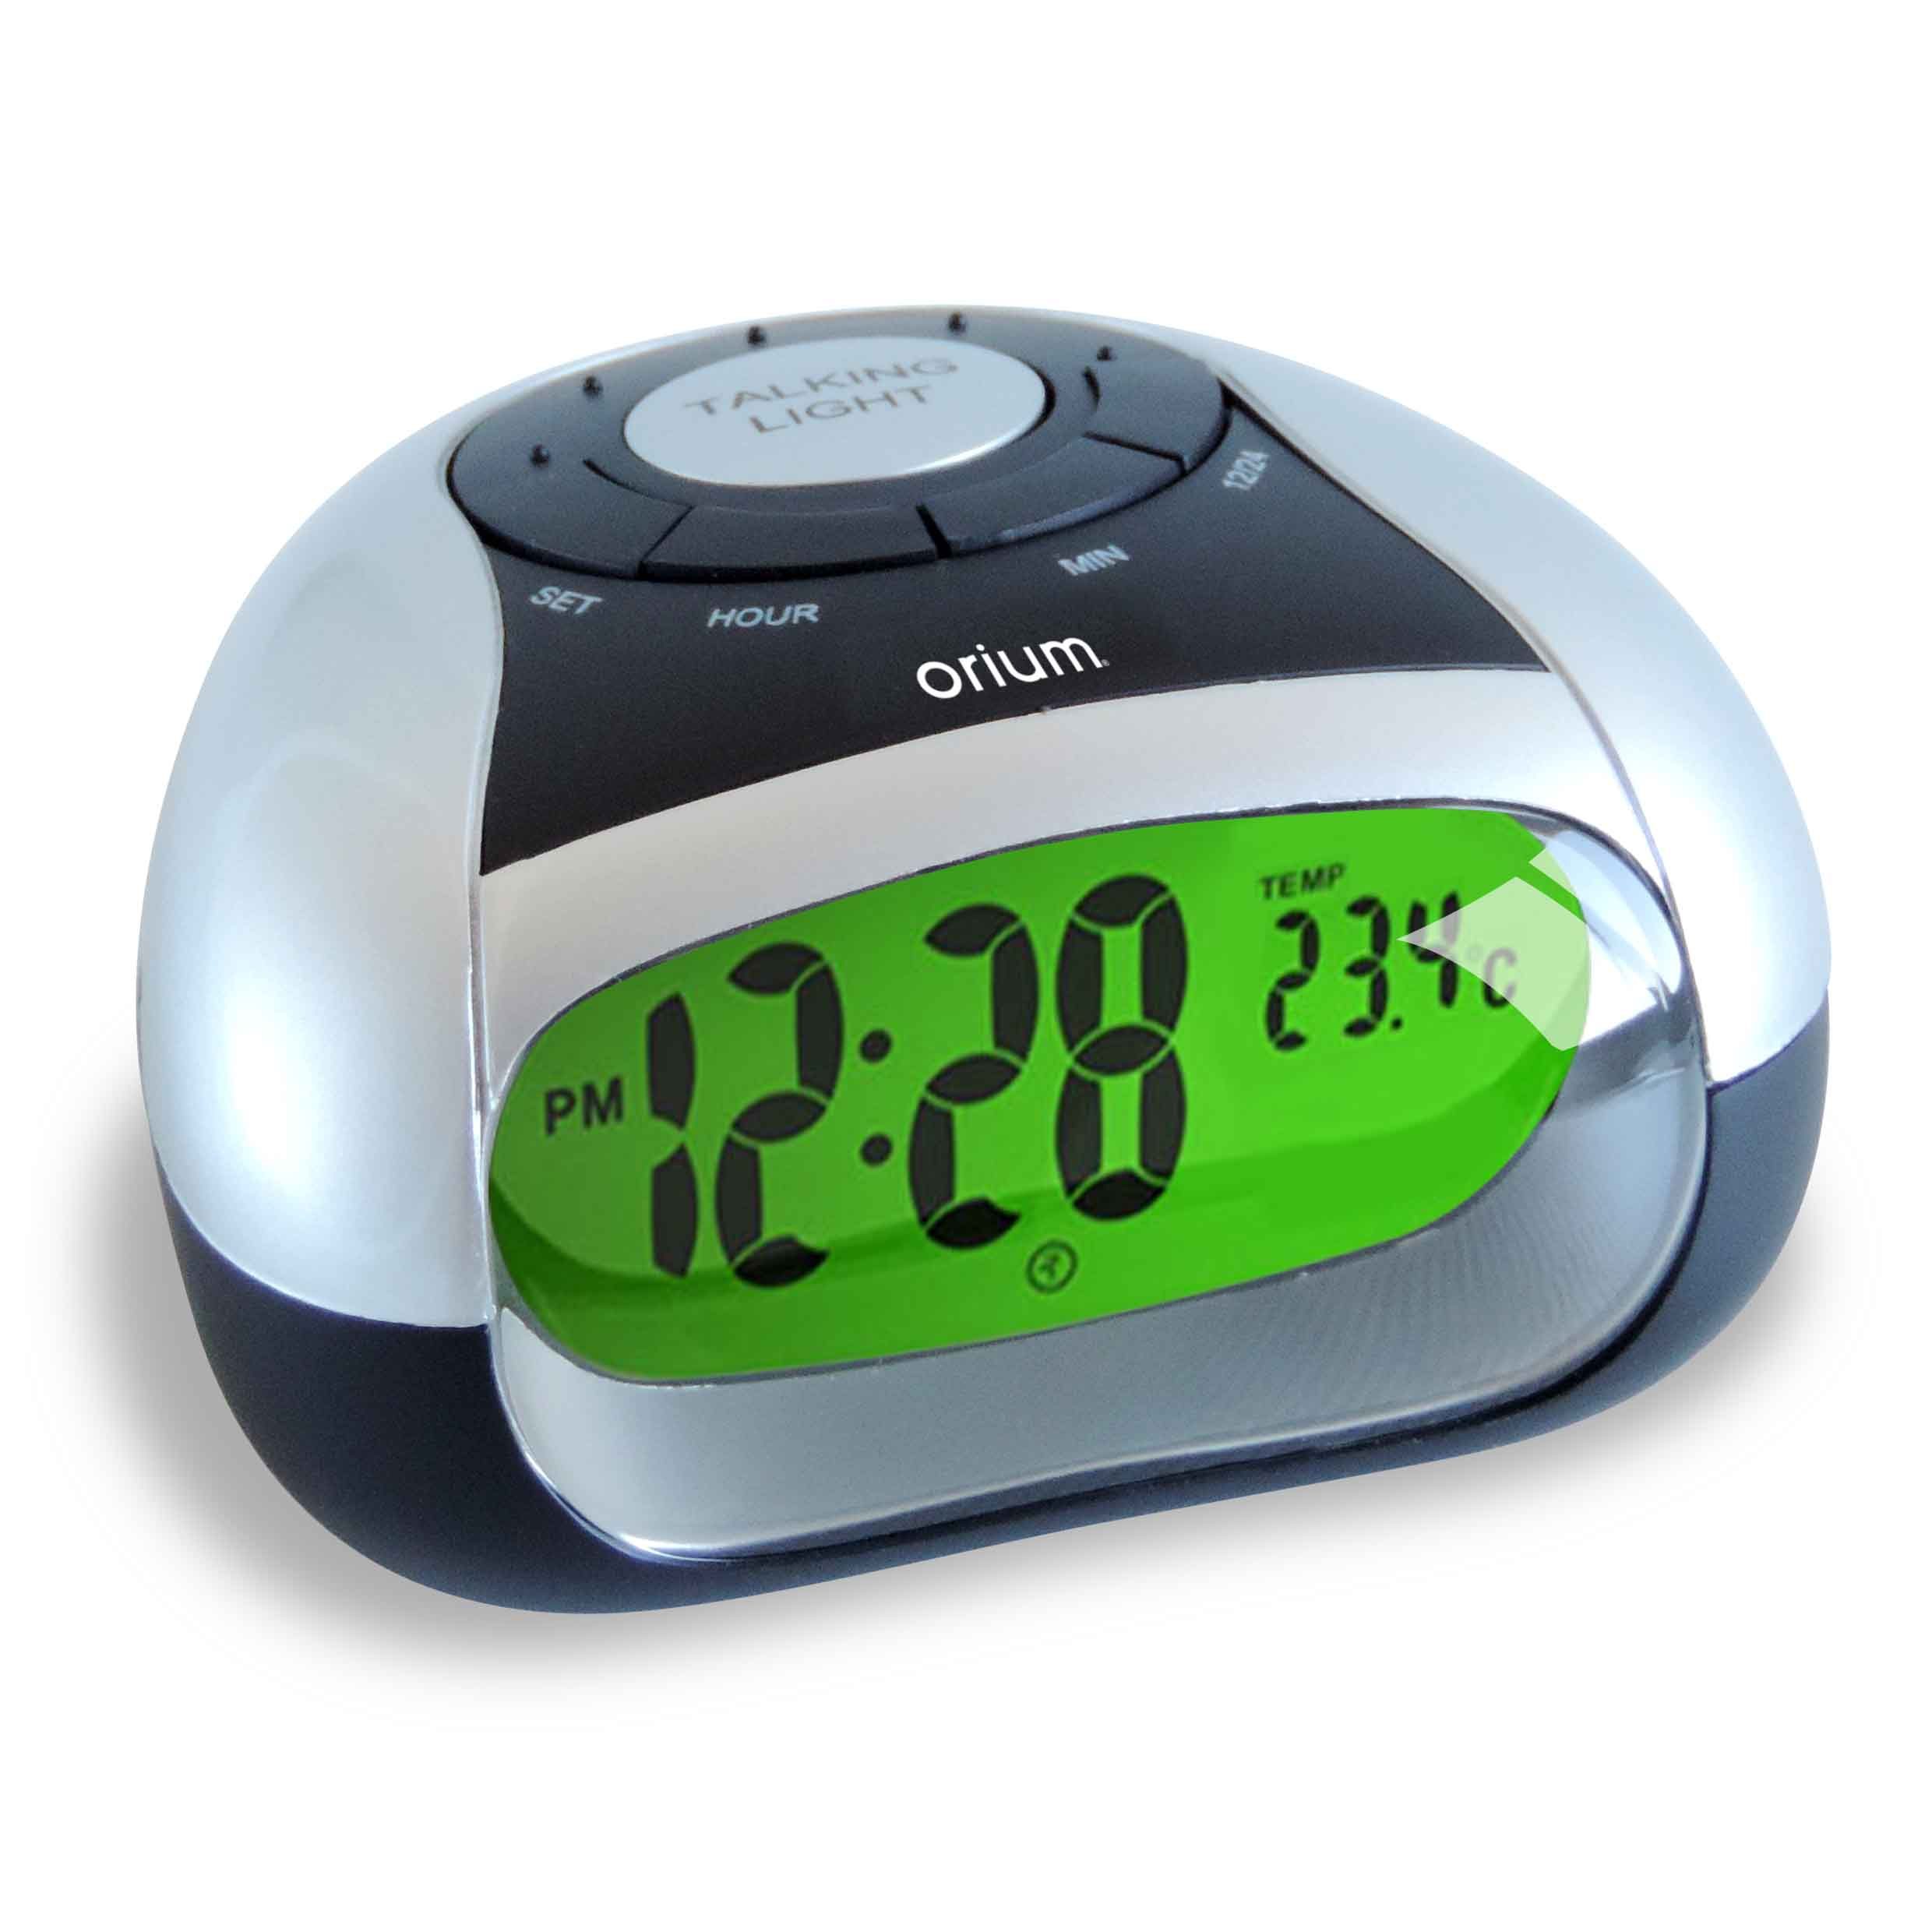 Говорящие часы с термометром. Говорящие часы с будильником и термометром. Reveil Alarm Clock. Часы VST 770t-1. Говорящие часы настольные